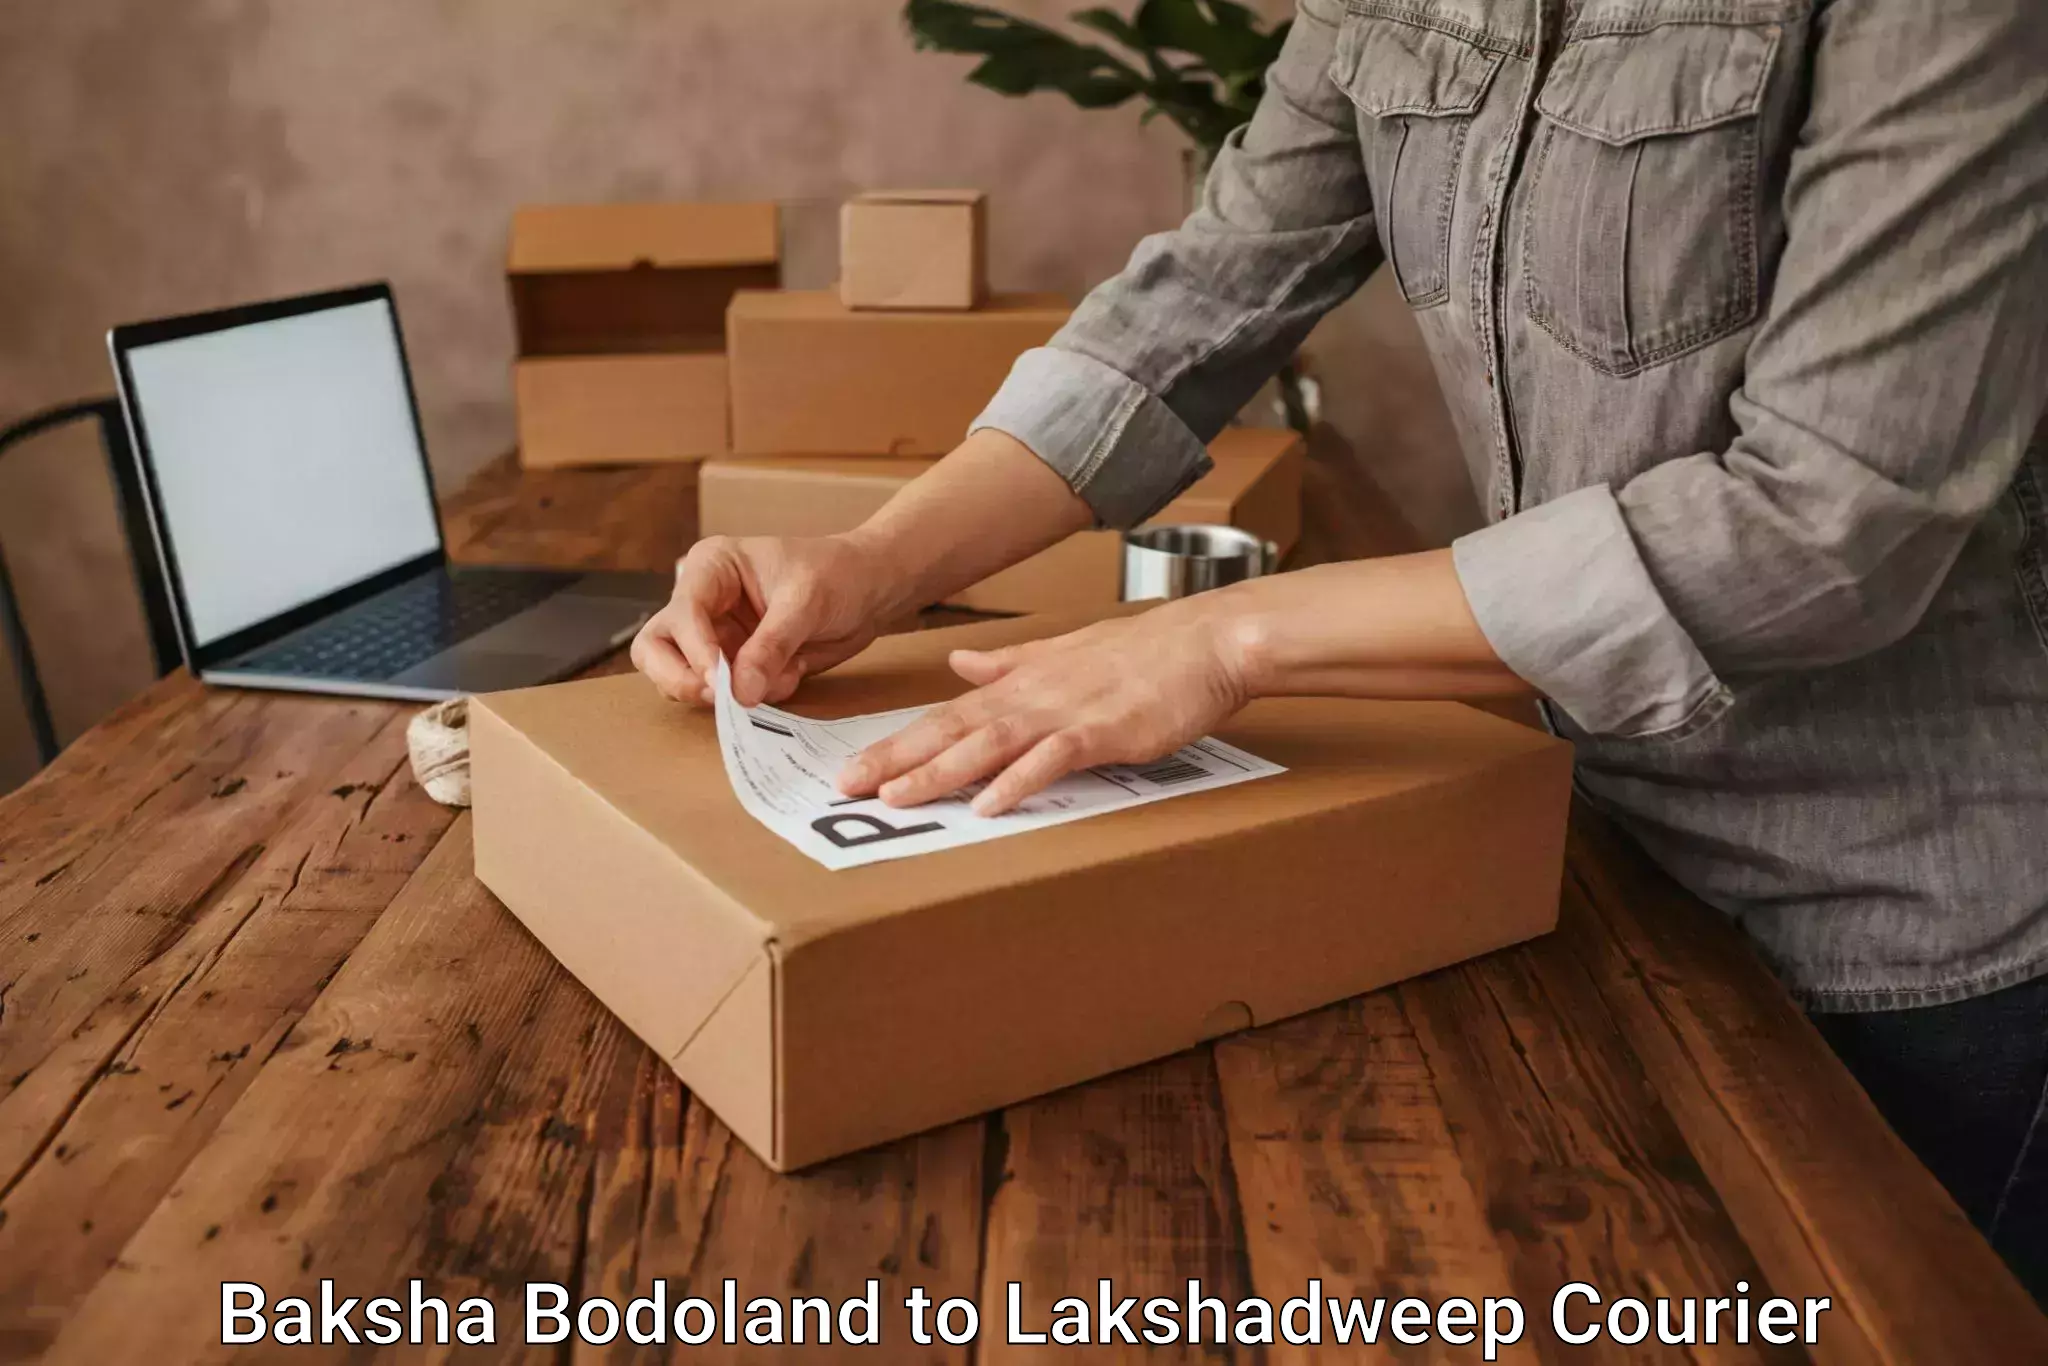 Courier insurance Baksha Bodoland to Lakshadweep